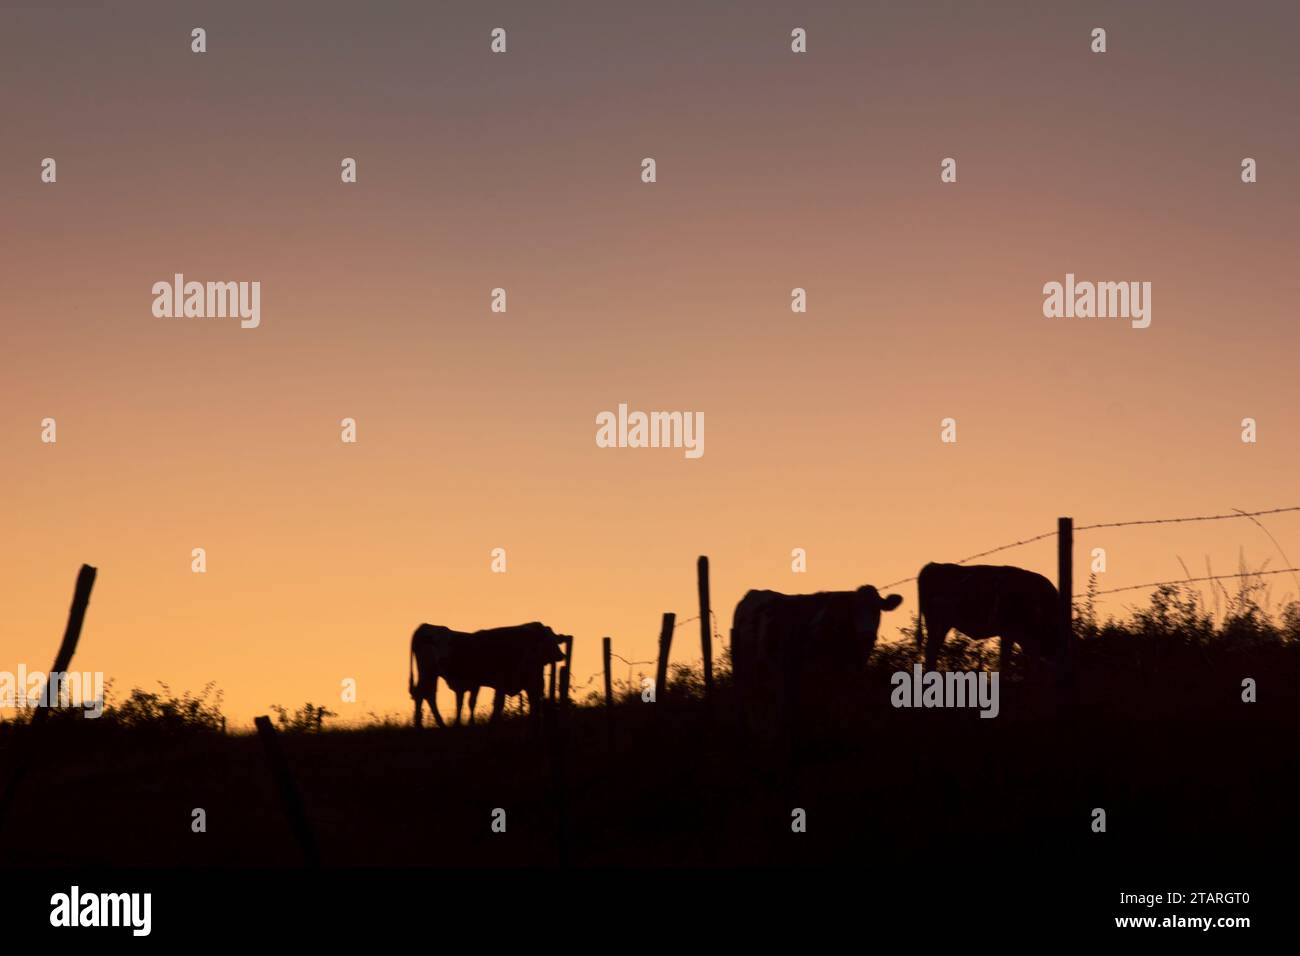 Vaches dans un Champ de lozere à la fin de la journée – Kühe in einem lozere-Feld (Region occitanie, Südfrankreich) am Ende des Tages Stockfoto